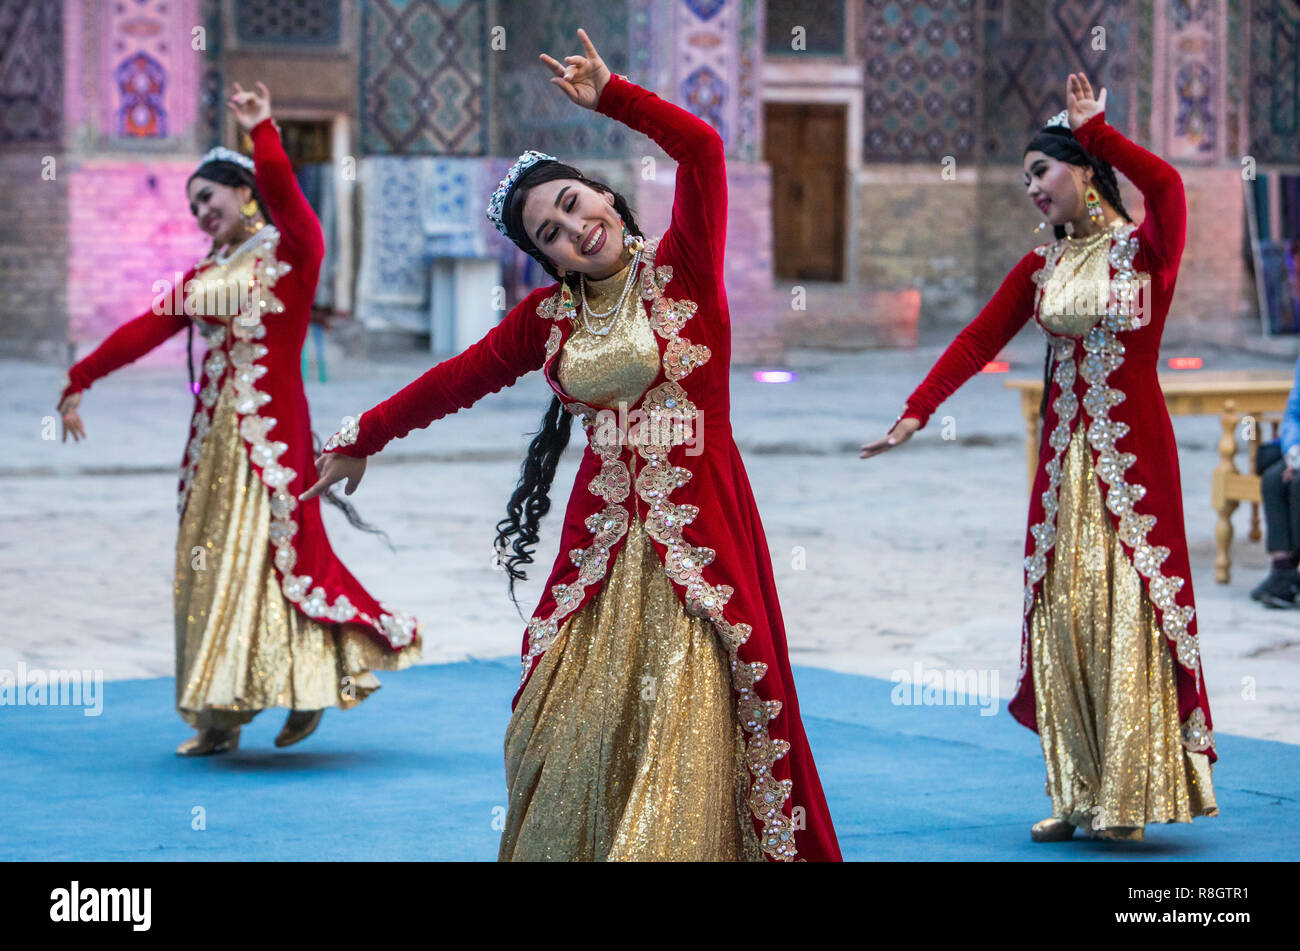 La danse traditionnelle, folklore, spectacle, spectacles, performances, Samarkand, Ouzbékistan Banque D'Images